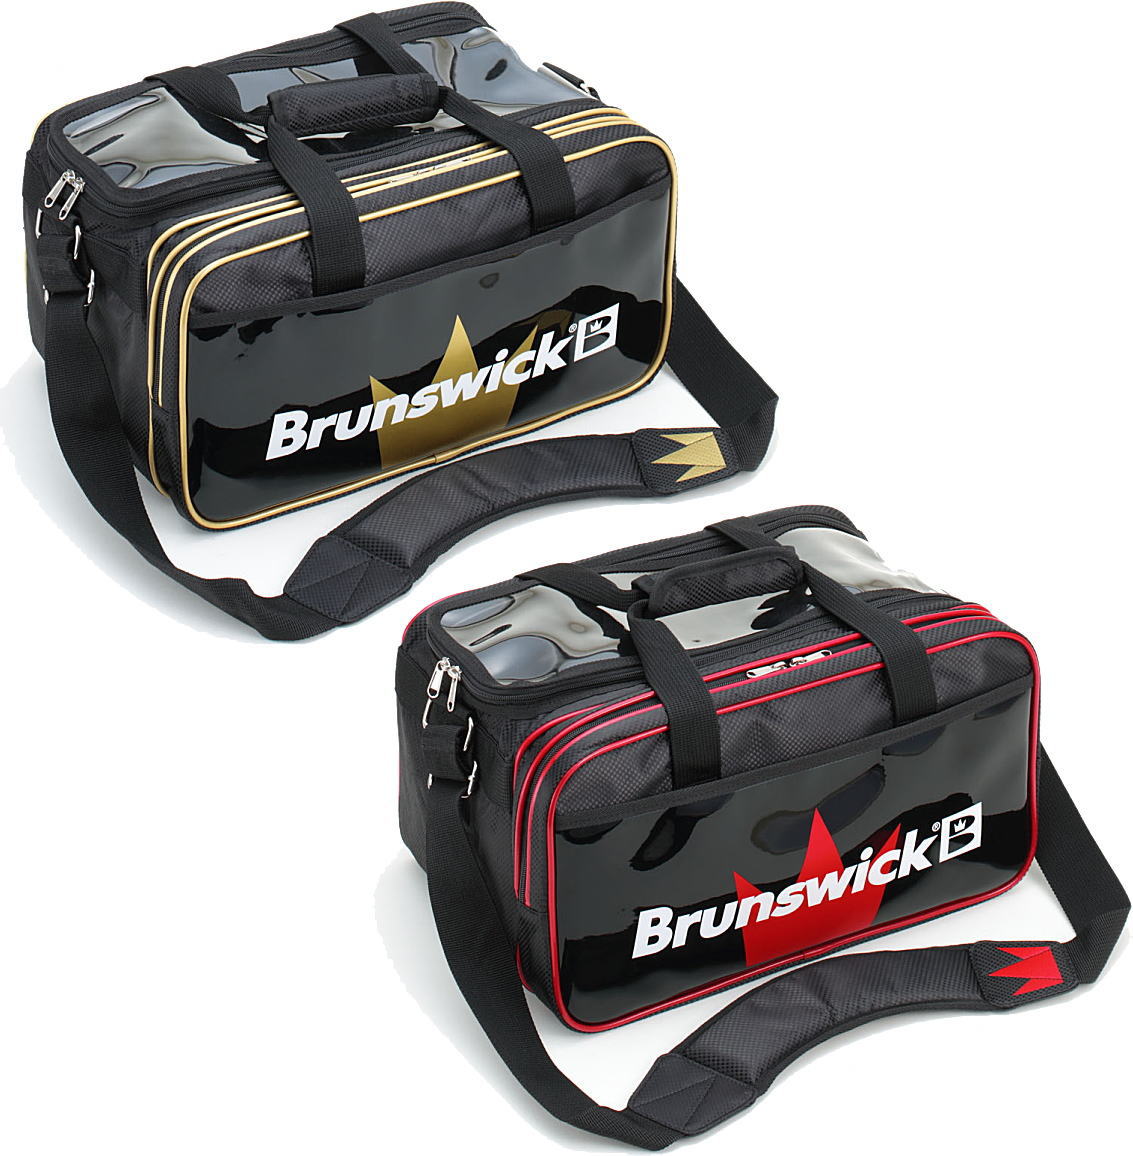 【Brunswick】 BB48 ダブルユニットバッグの商品画像